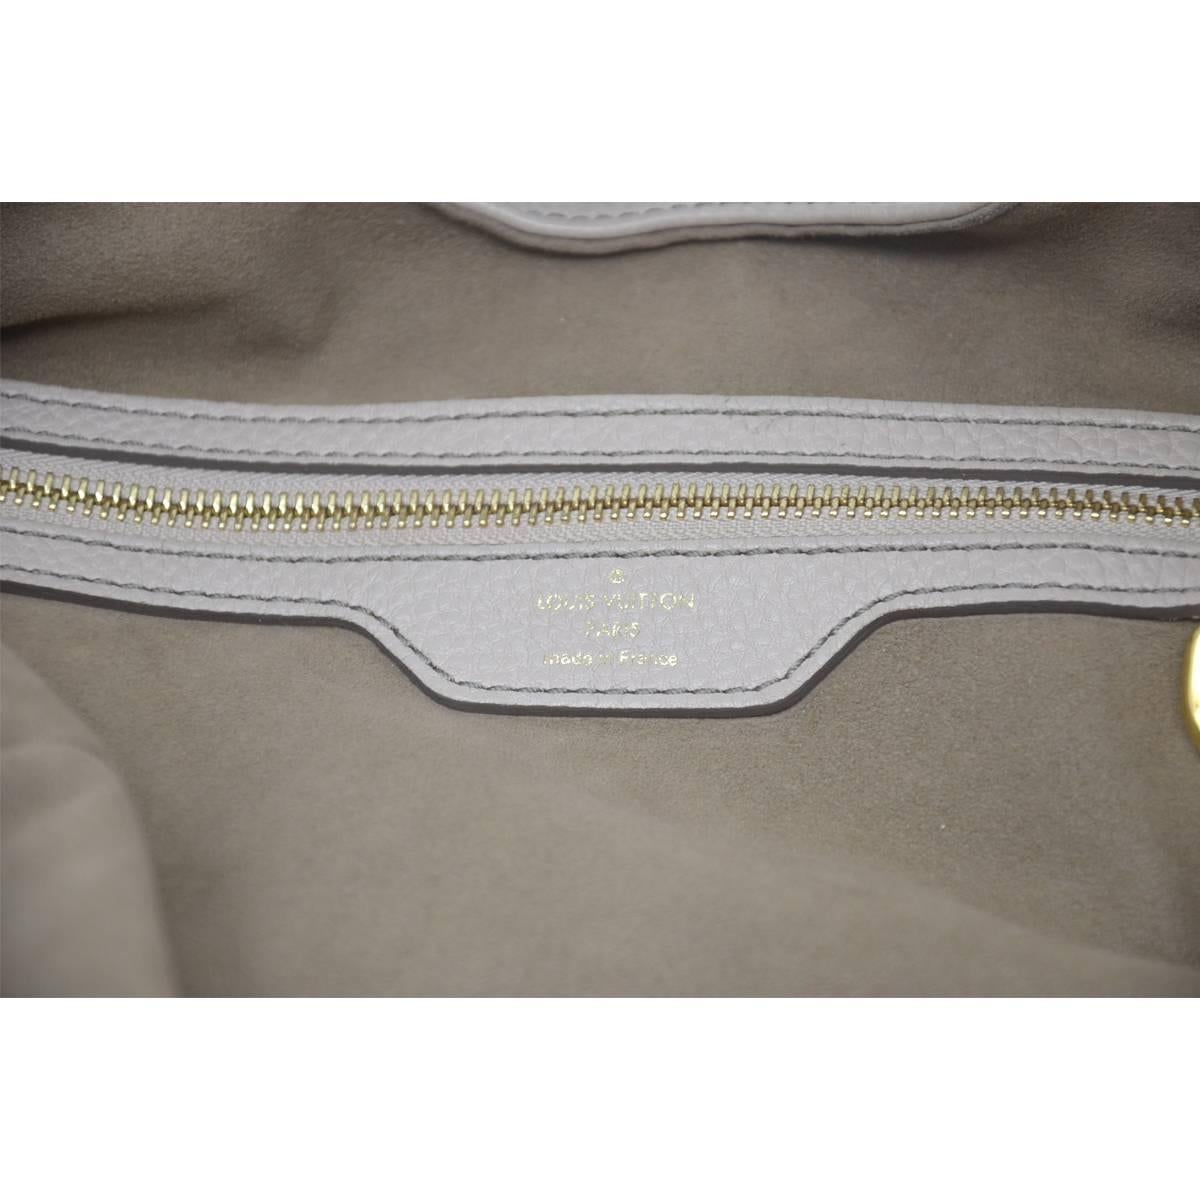 Louis Vuitton Mahina Taupe Grey Leather Hobo Handbag 2